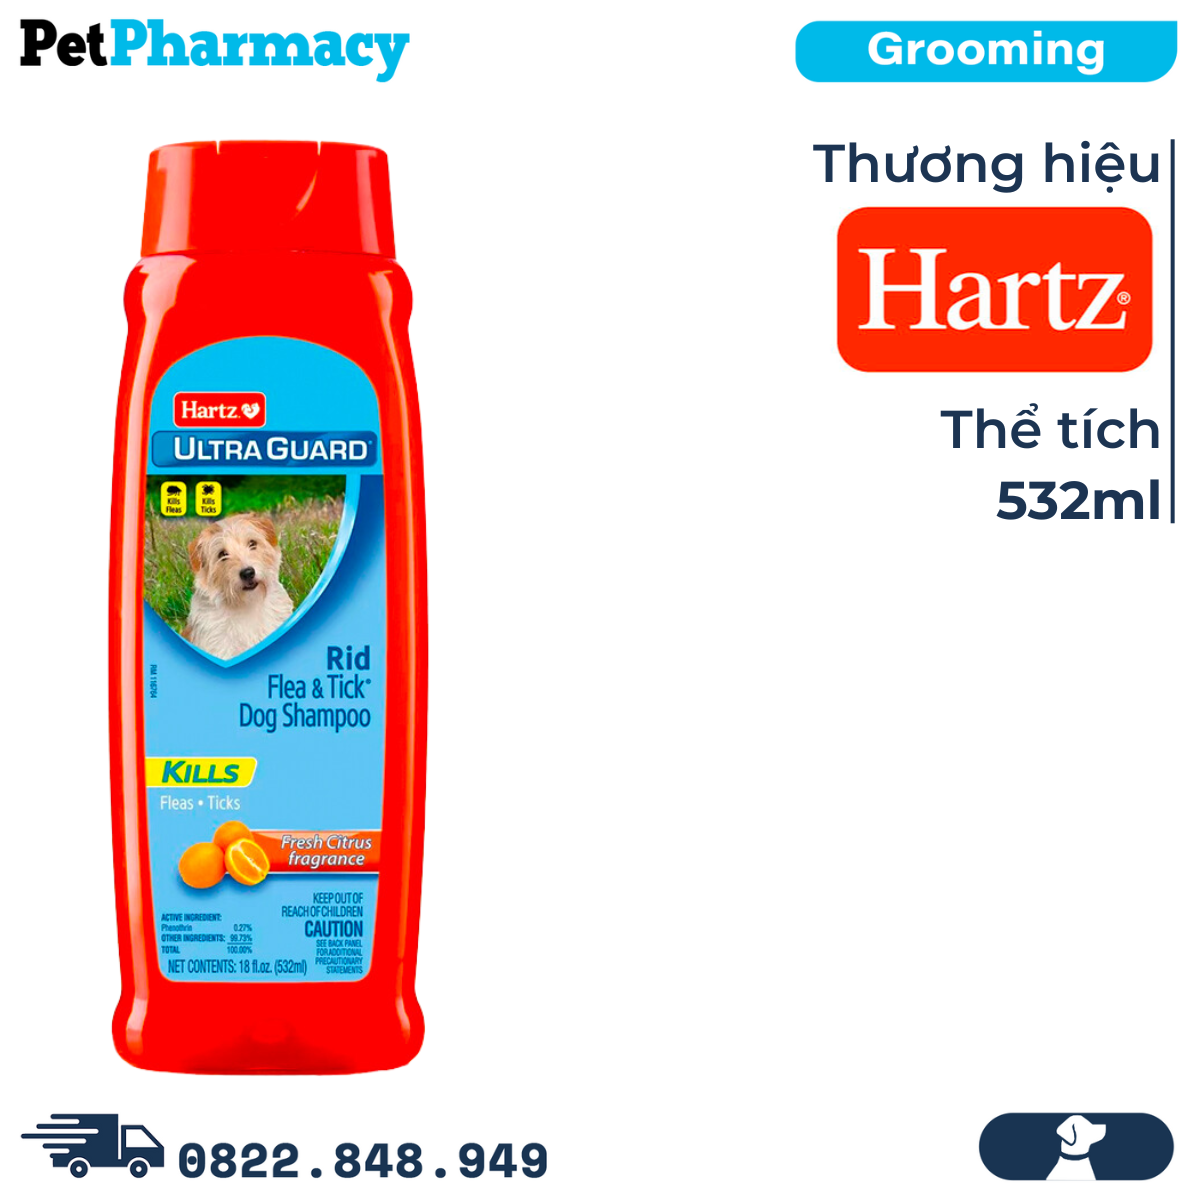  Sữa tắm Hartz Ultra Guard Rid Flea & Ticks Fresh Citrus Fragrance Dog Shampoo 532ml - Hương Cam, trị ve bọ chét cho Chó 